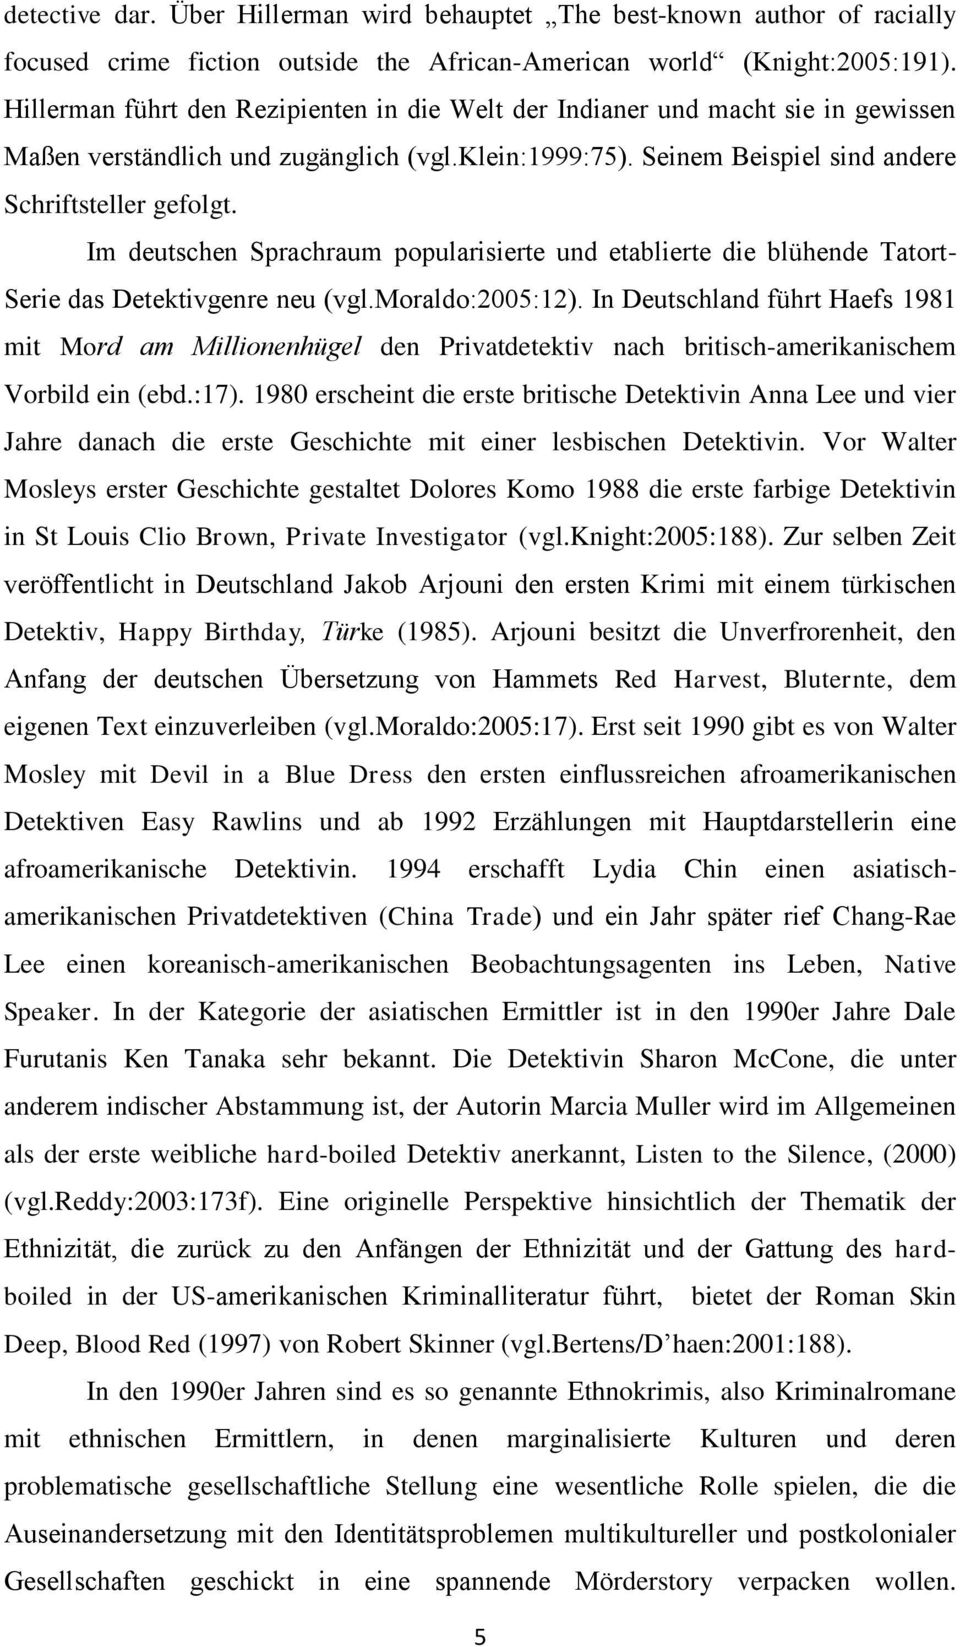 Im deutschen Sprachraum popularisierte und etablierte die blühende Tatort- Serie das Detektivgenre neu (vgl.moraldo:2005:12).